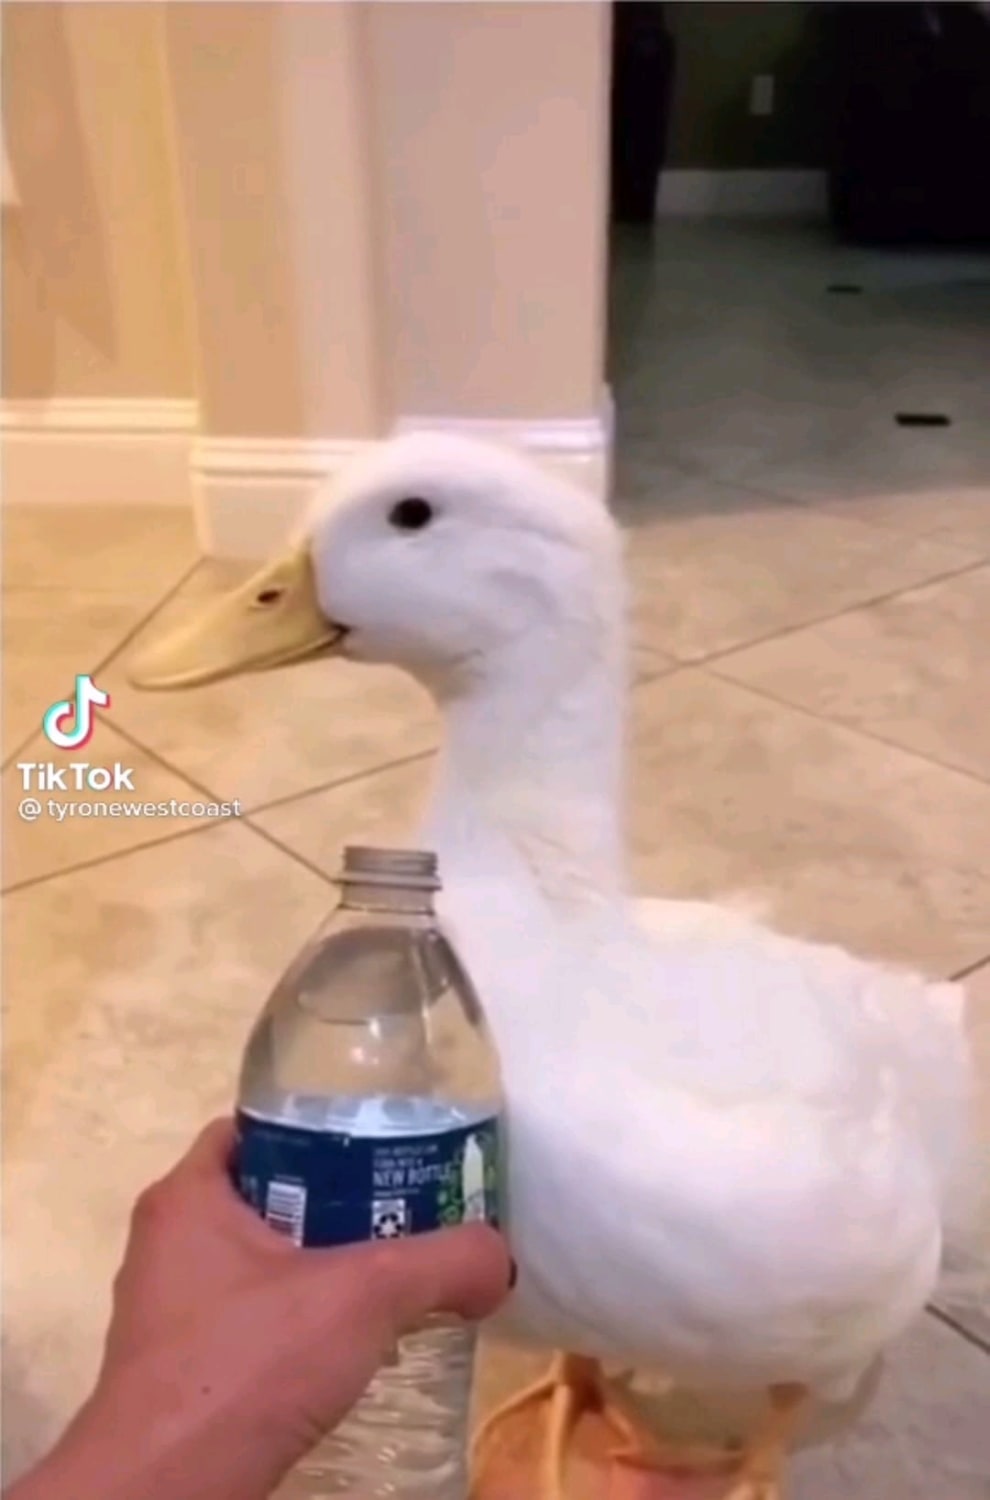 Look inside the water bottle duck